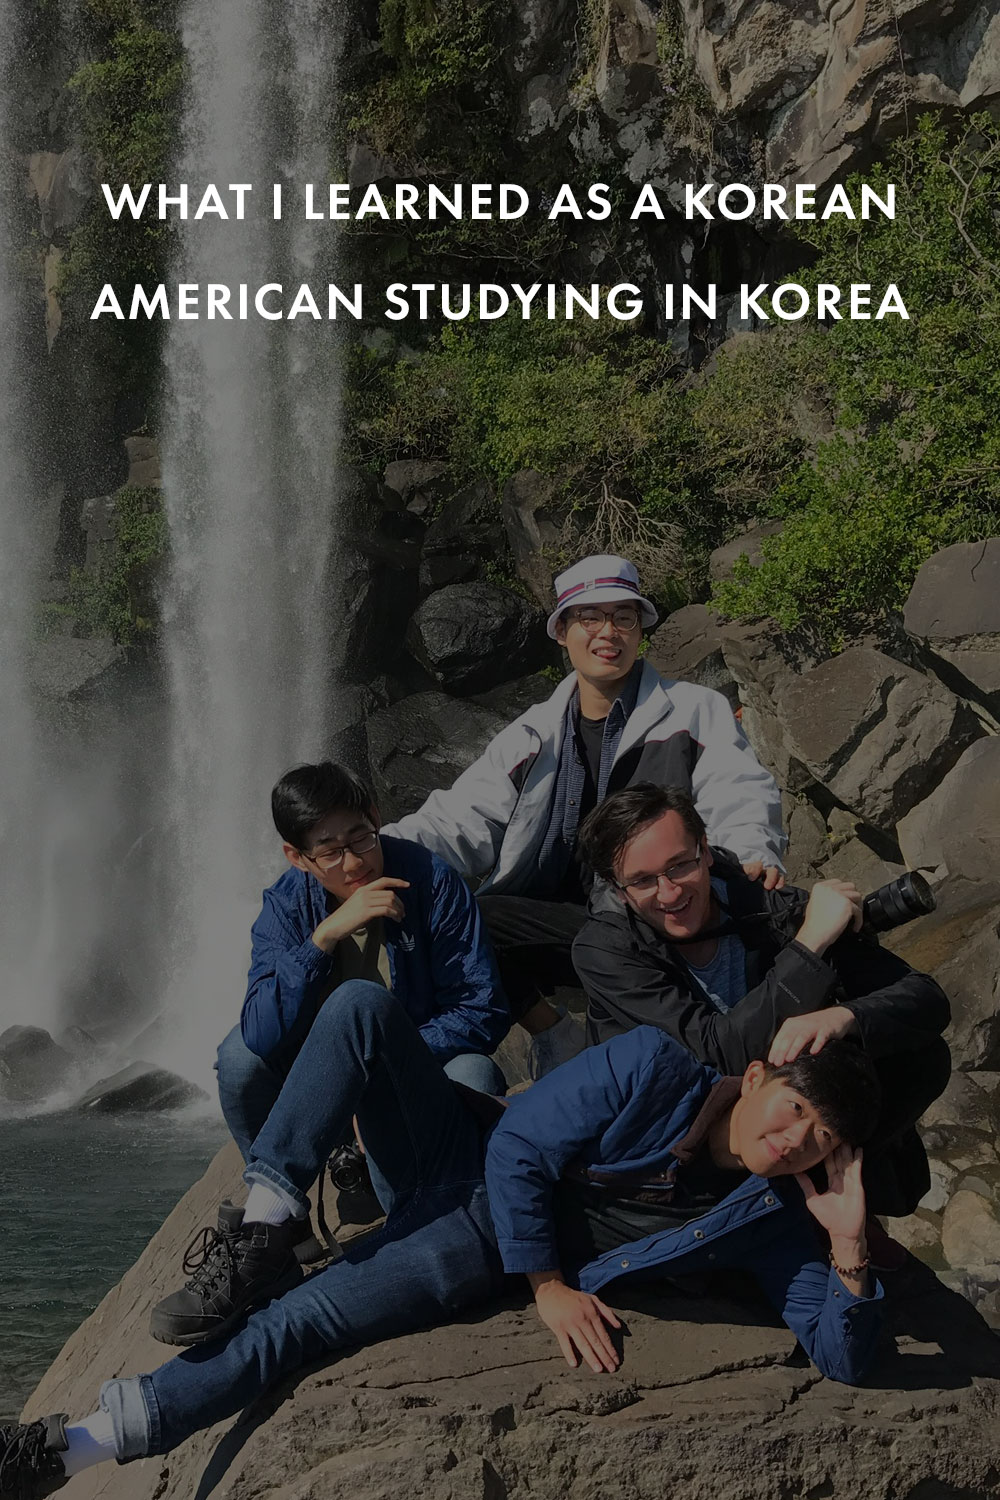 Four friends posing near a waterfall in Korea. 